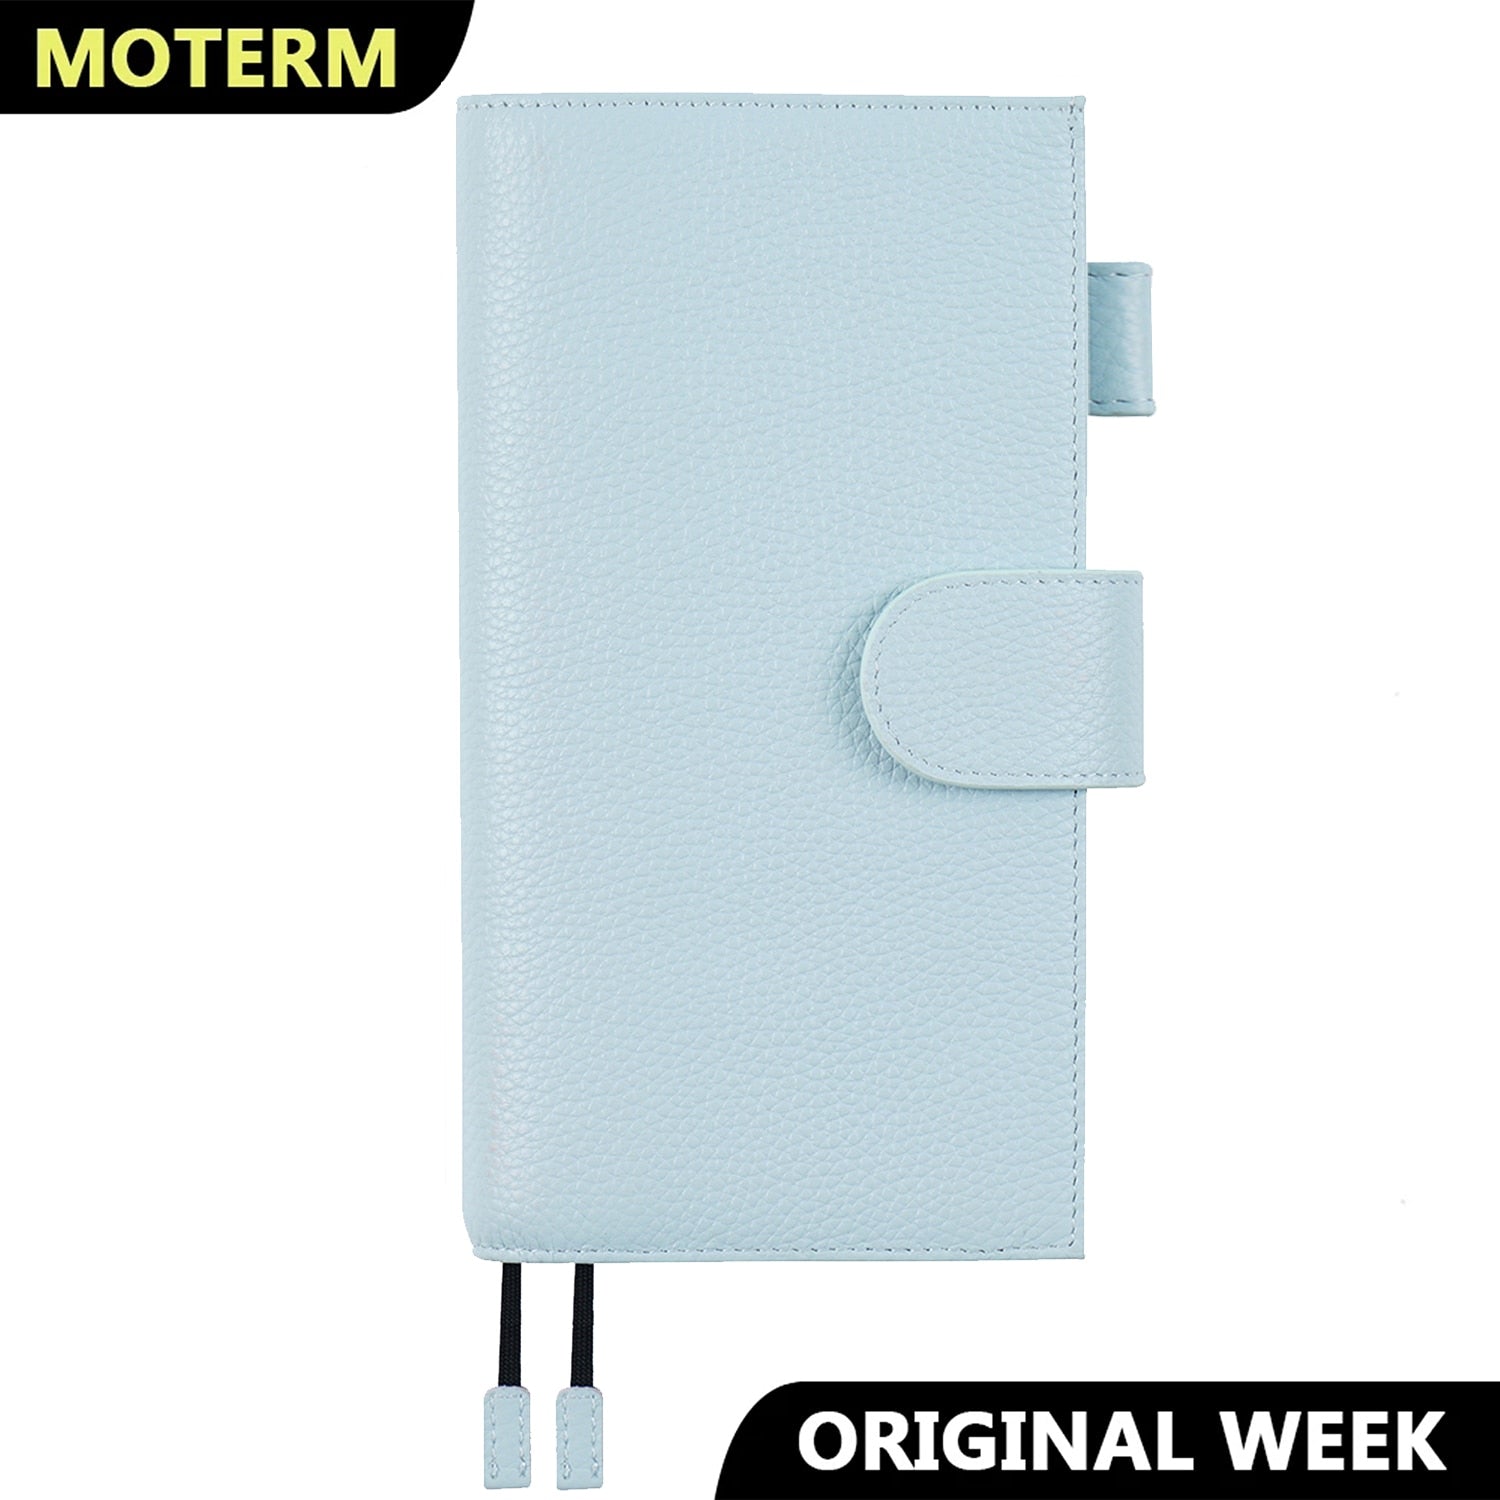 Moterm Original Weeks Cover for Hobonichi Weeks/ Mega with Back